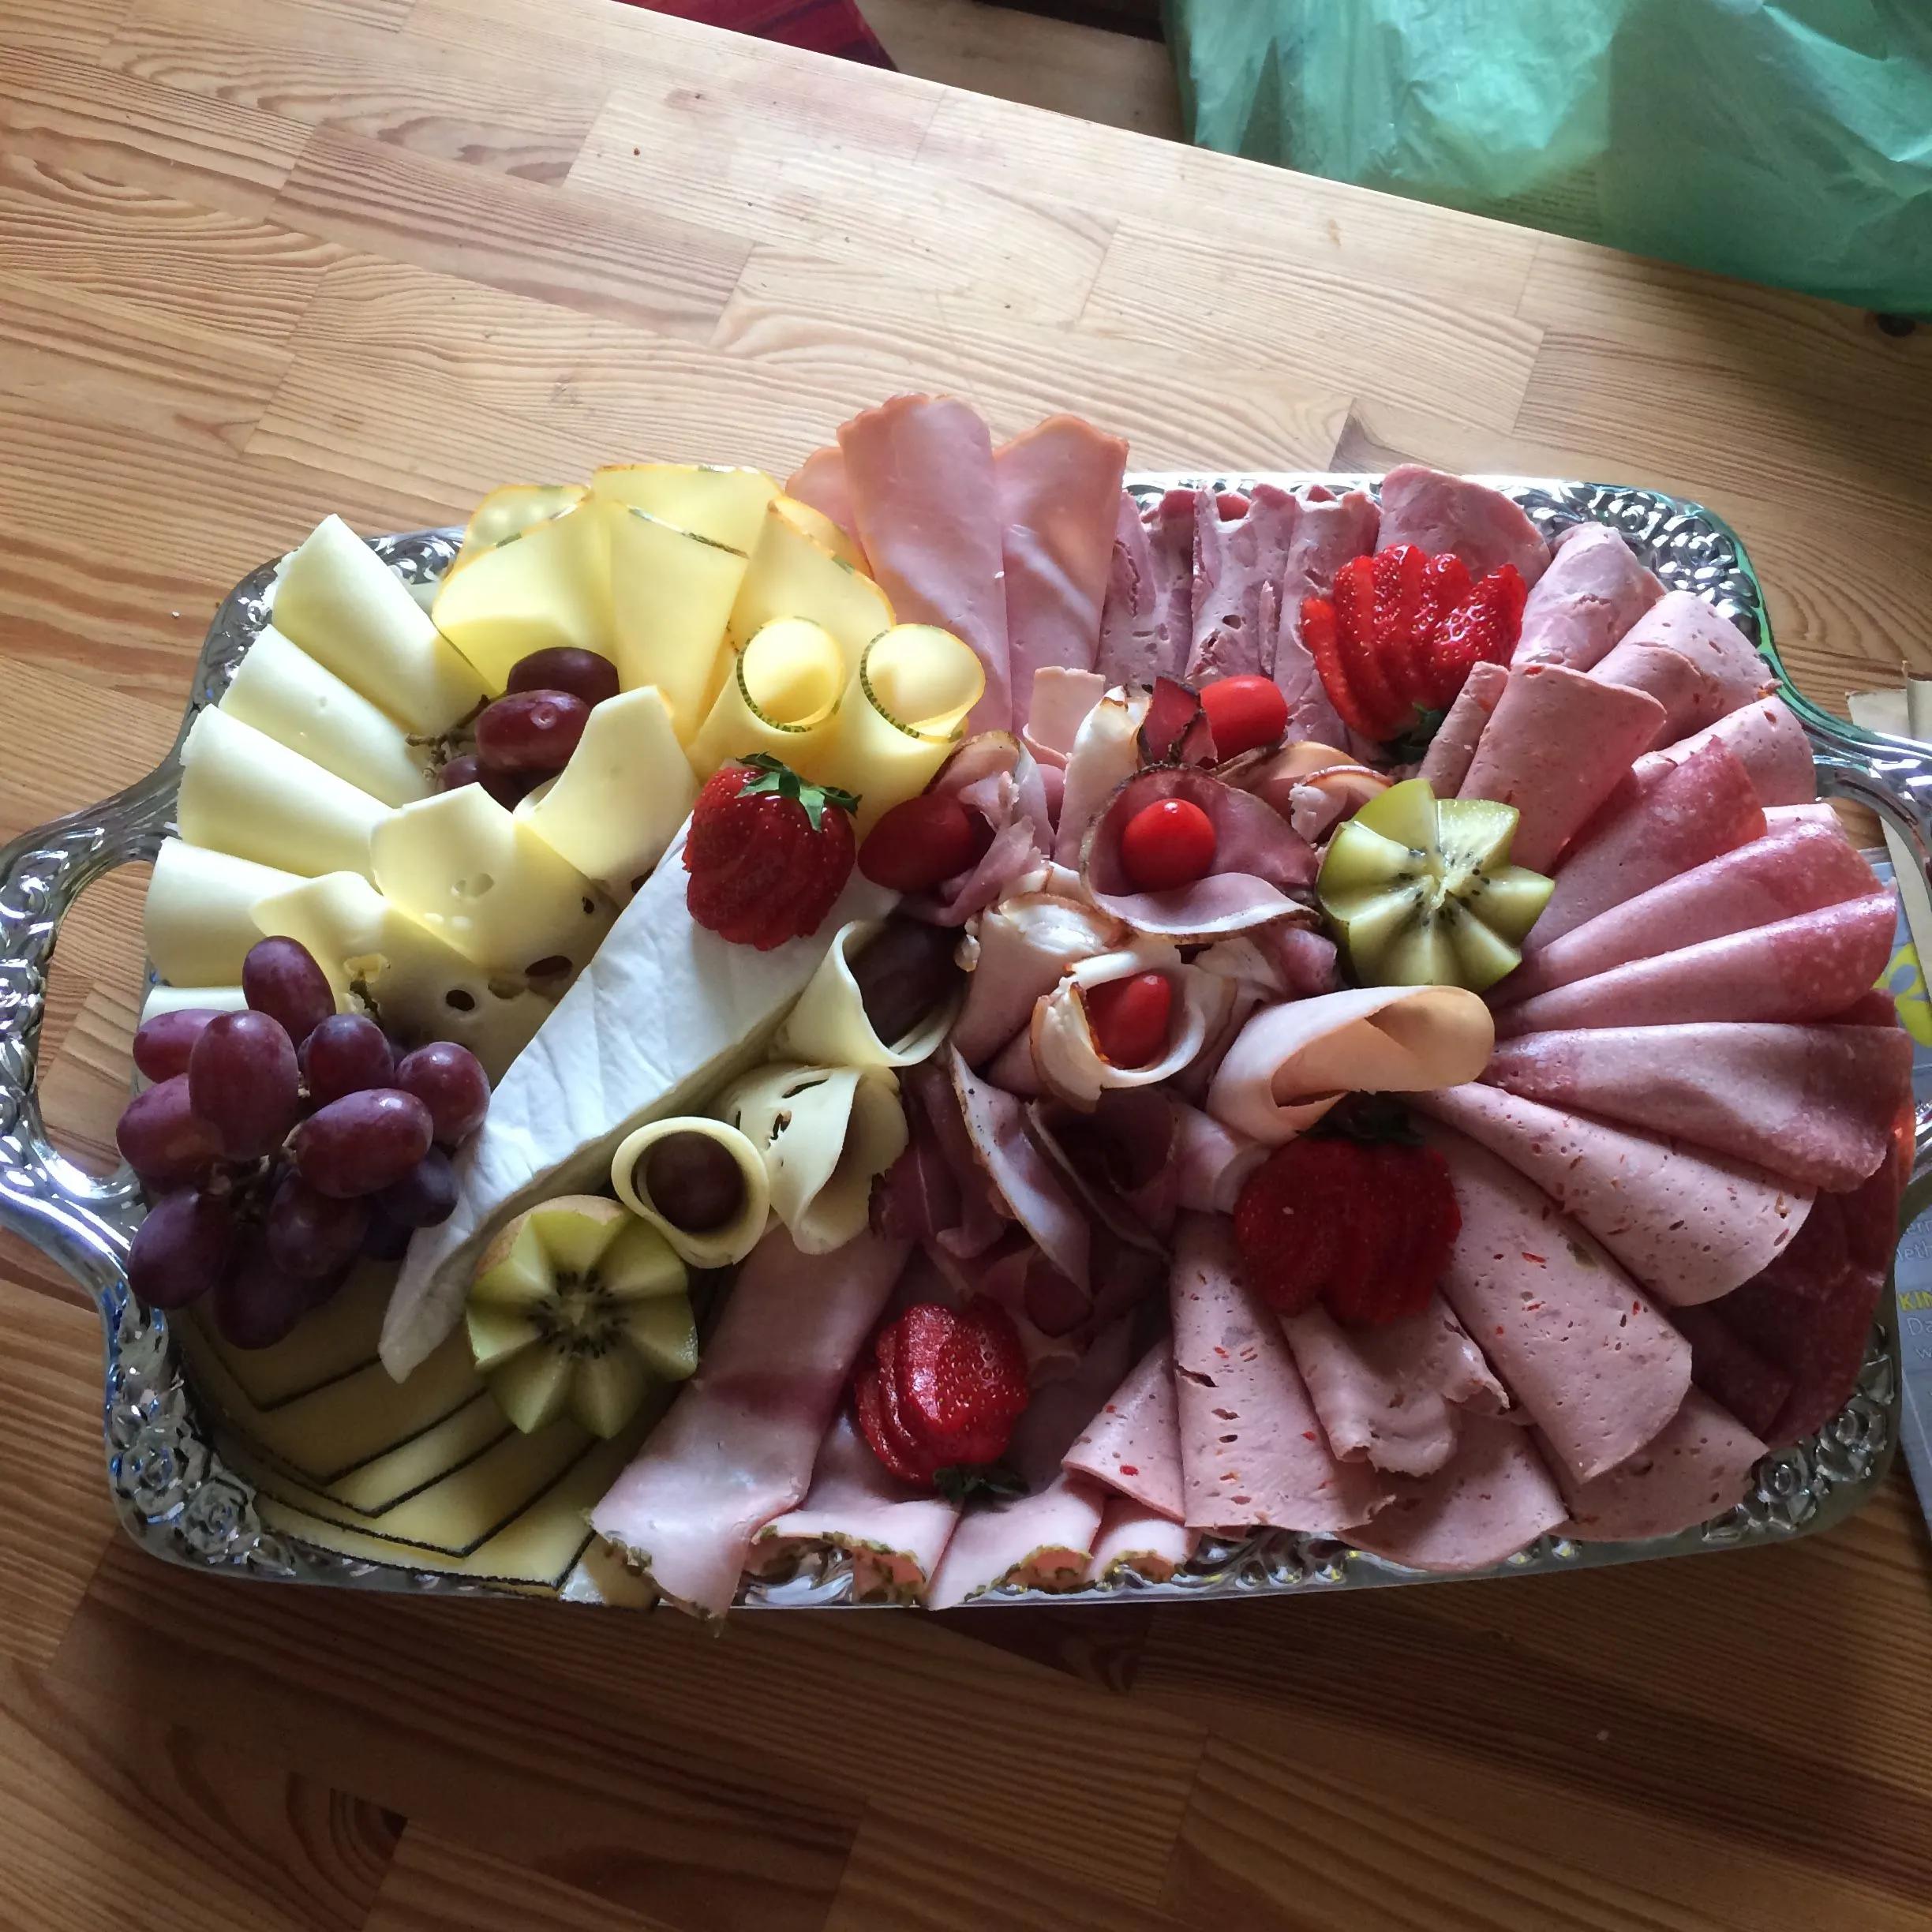 Wurst / Käseplatte für 7 Mädels 😉 | Food, Fruit salad, Fruit